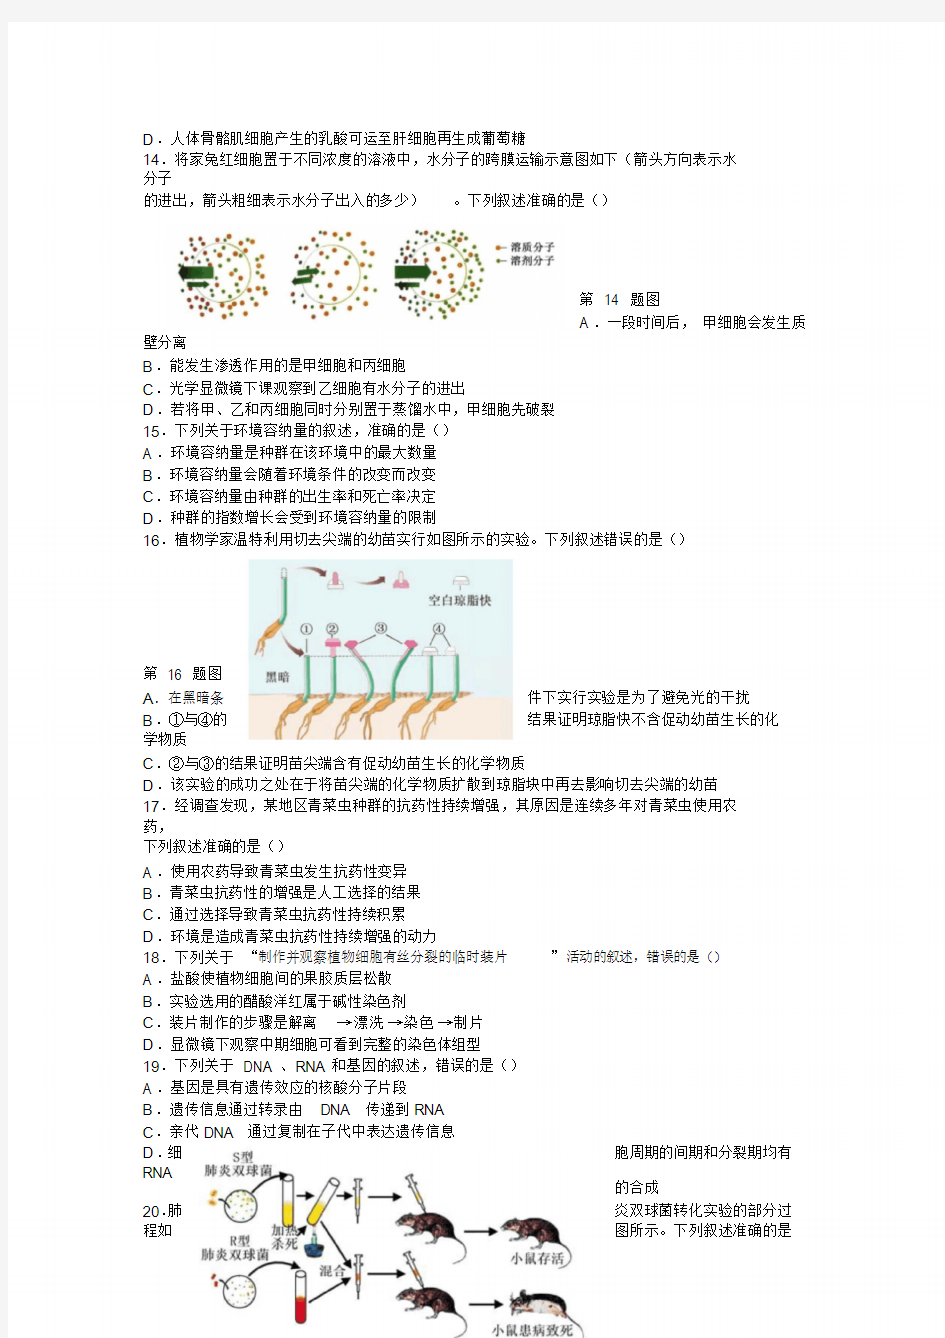 2019年4月浙江省新高考选考科目考试生物试题 Word版含答案